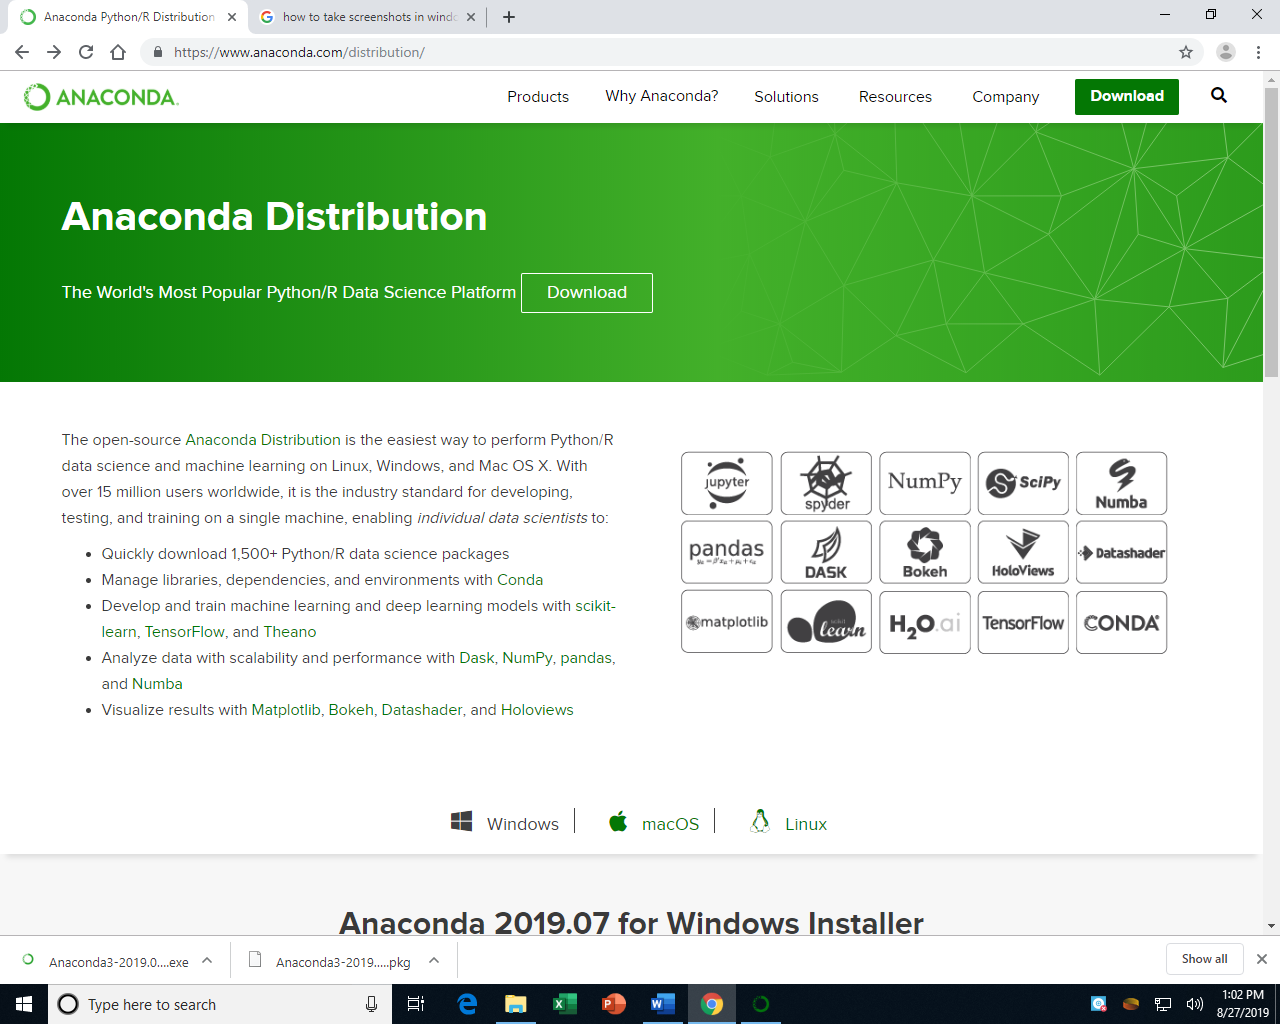 A screenshot of the Anaconda website at
www.anaconda.com/distribution